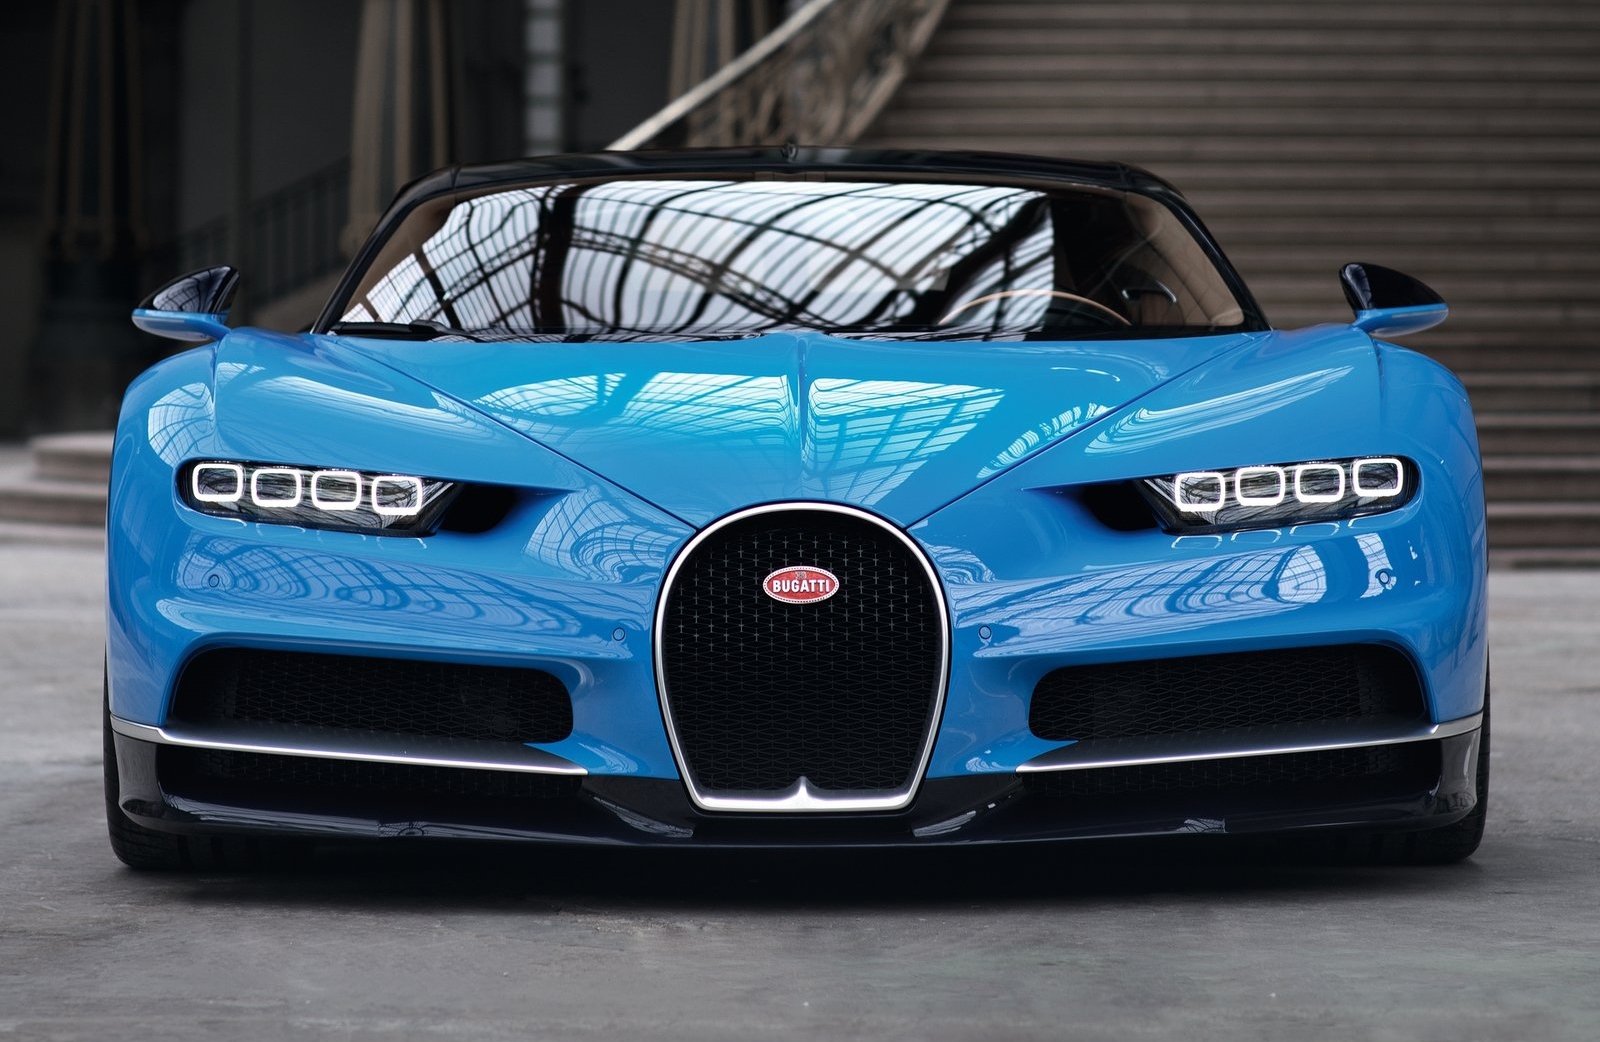 Bugatti Chiron And Veyron , HD Wallpaper & Backgrounds